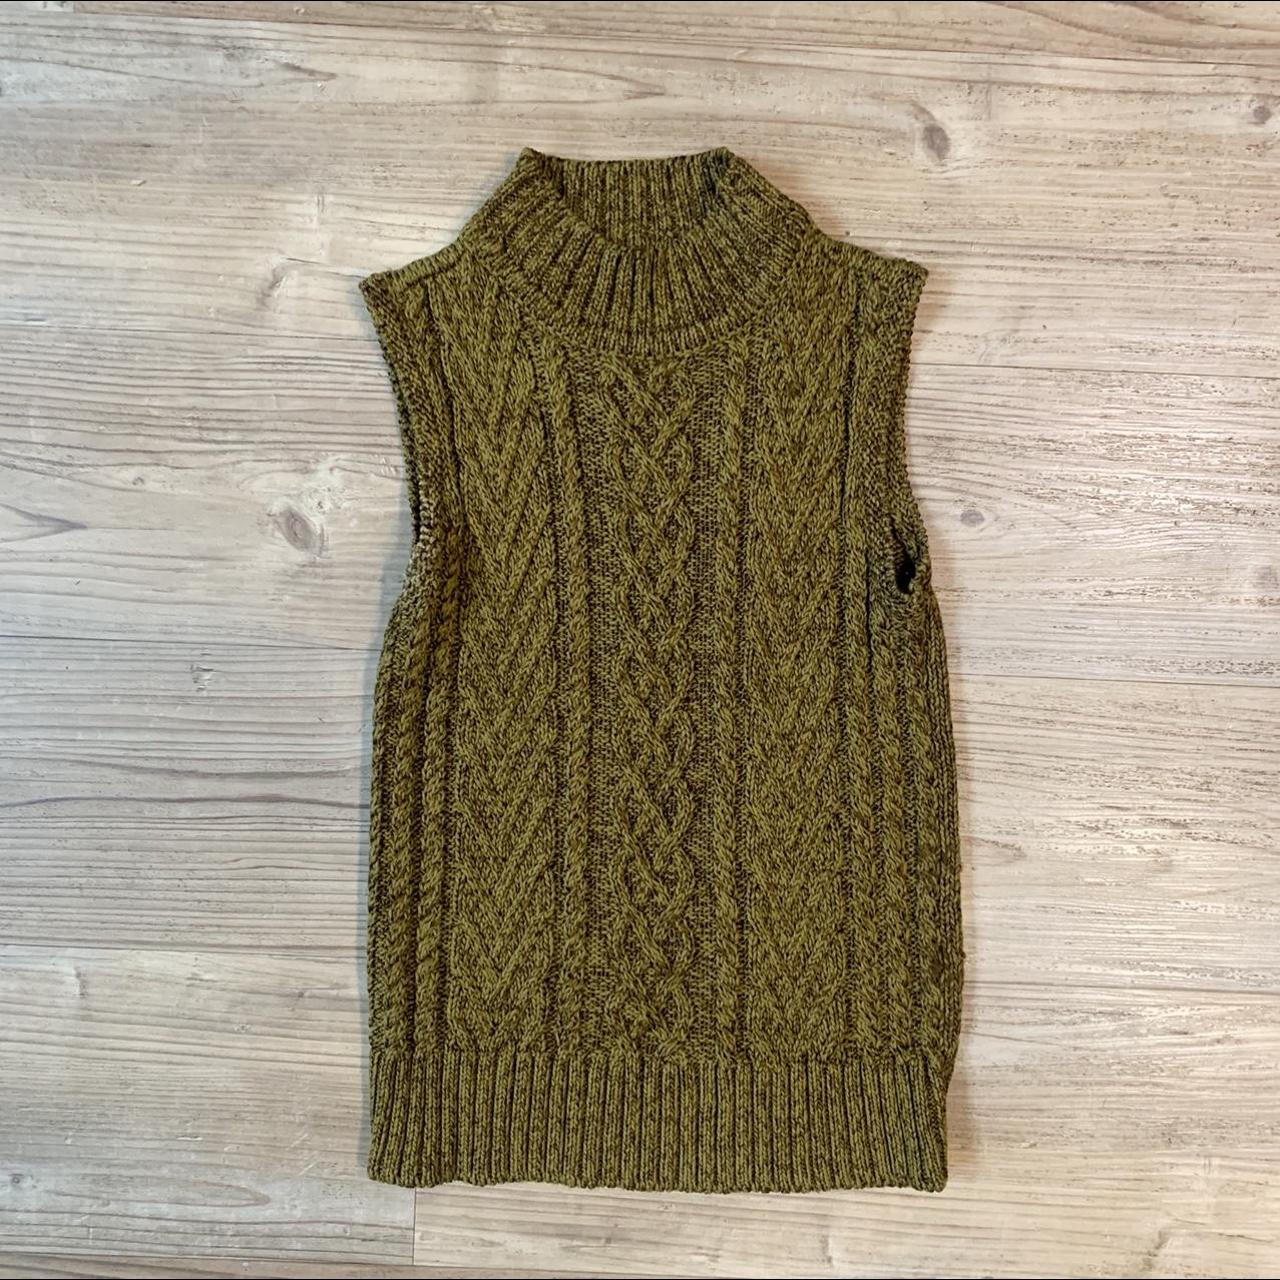 Brown Cable Knit Sweater Vest Vintage Liz Claiborne... - Depop